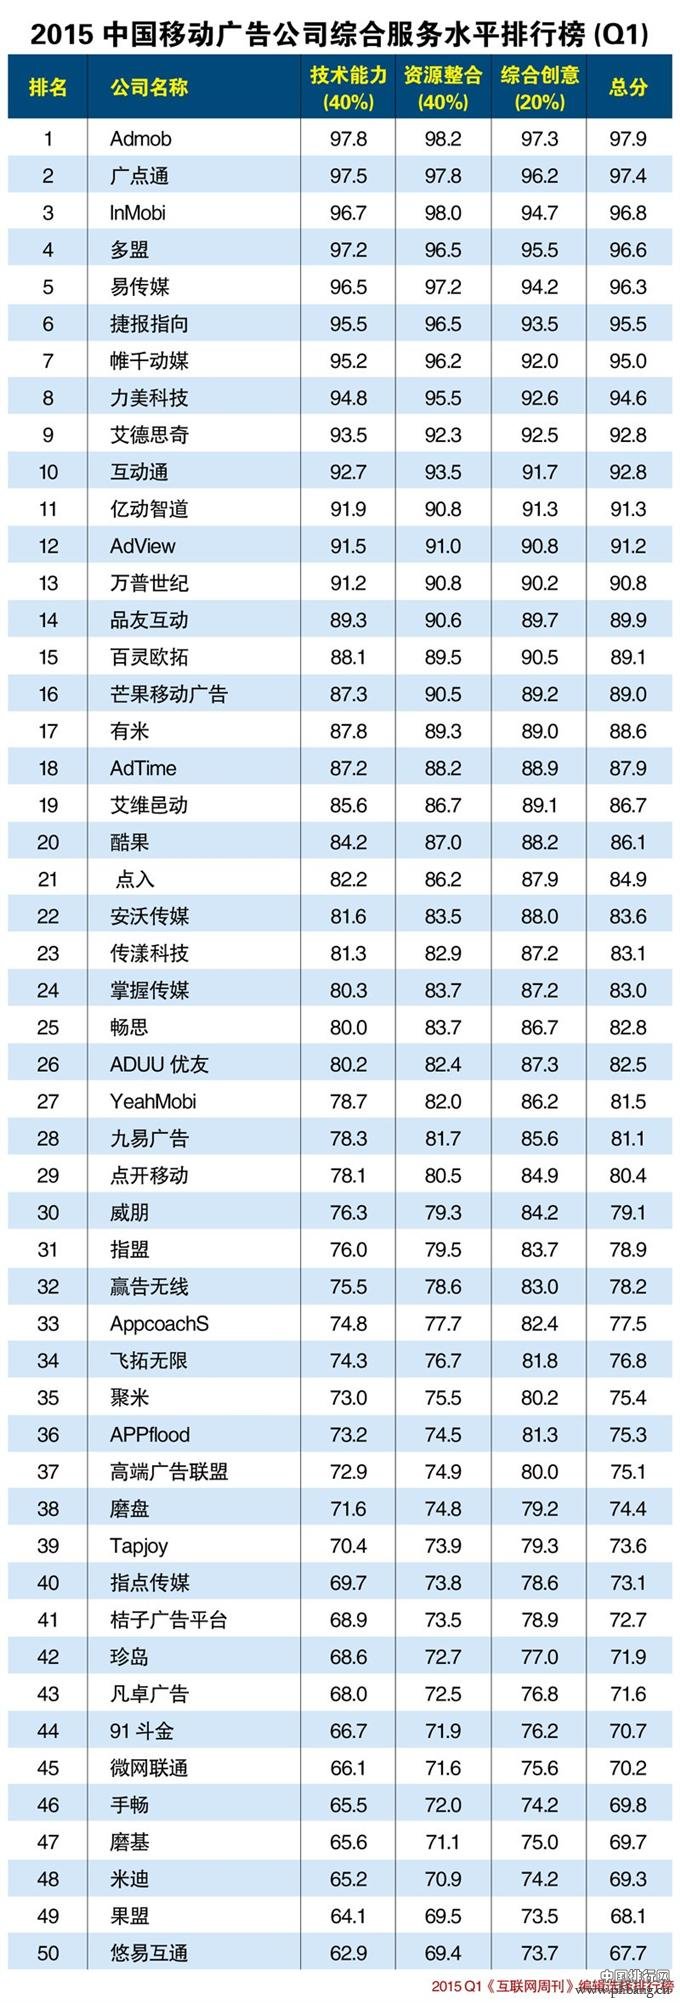 2015年一季度中国移动广告公司综合服务水平排行榜